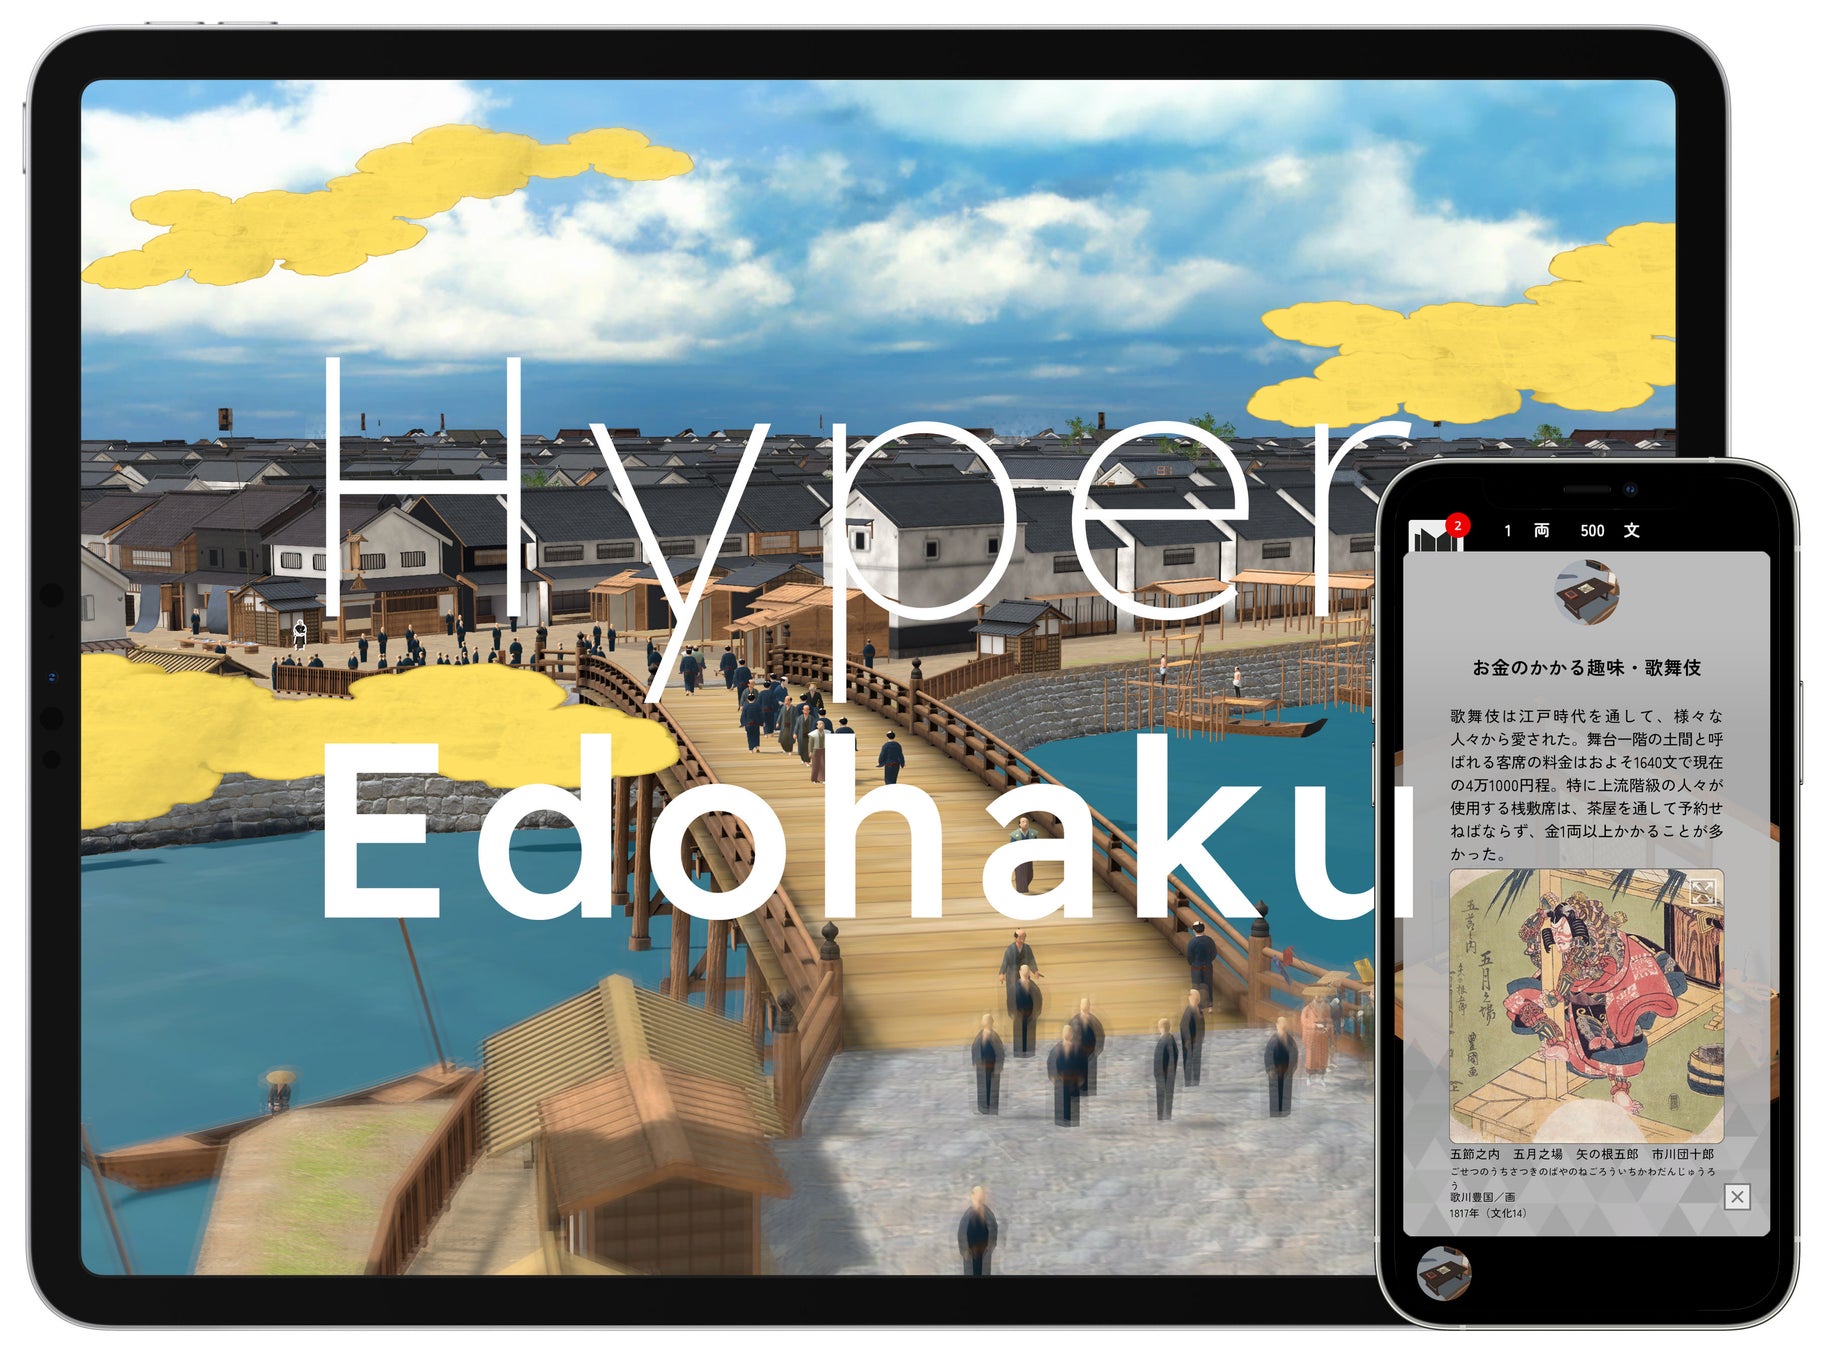 累計約19万ダウンロードを突破！博物館とゲーム会社が共同開発した江戸東京博物館スマートフォンアプリ第3弾...